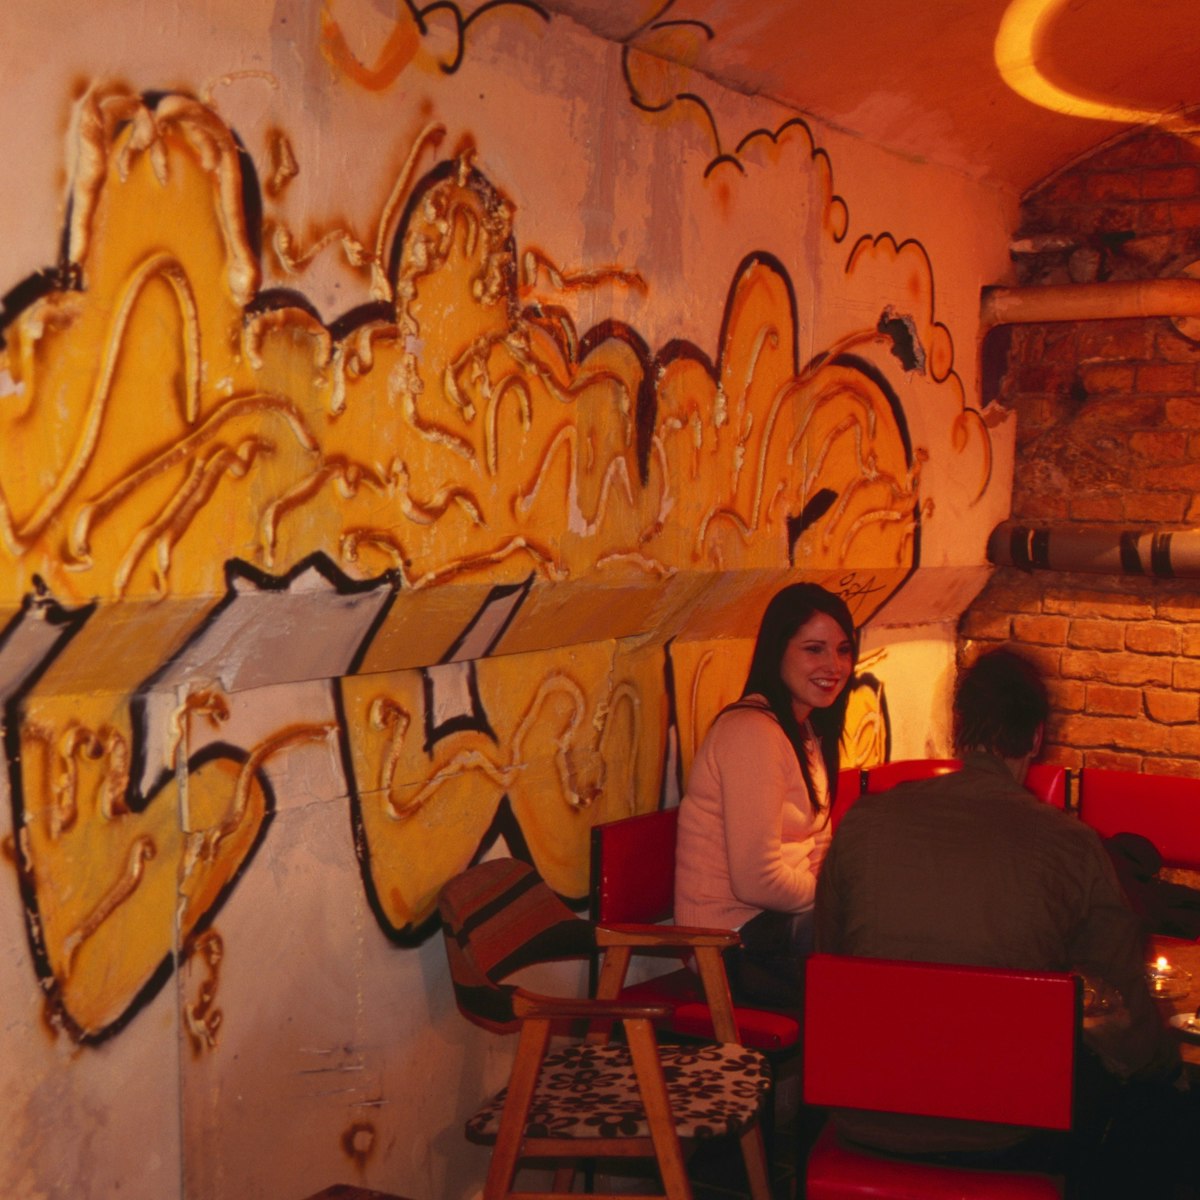 Guests and graffiti at Vittula Club.